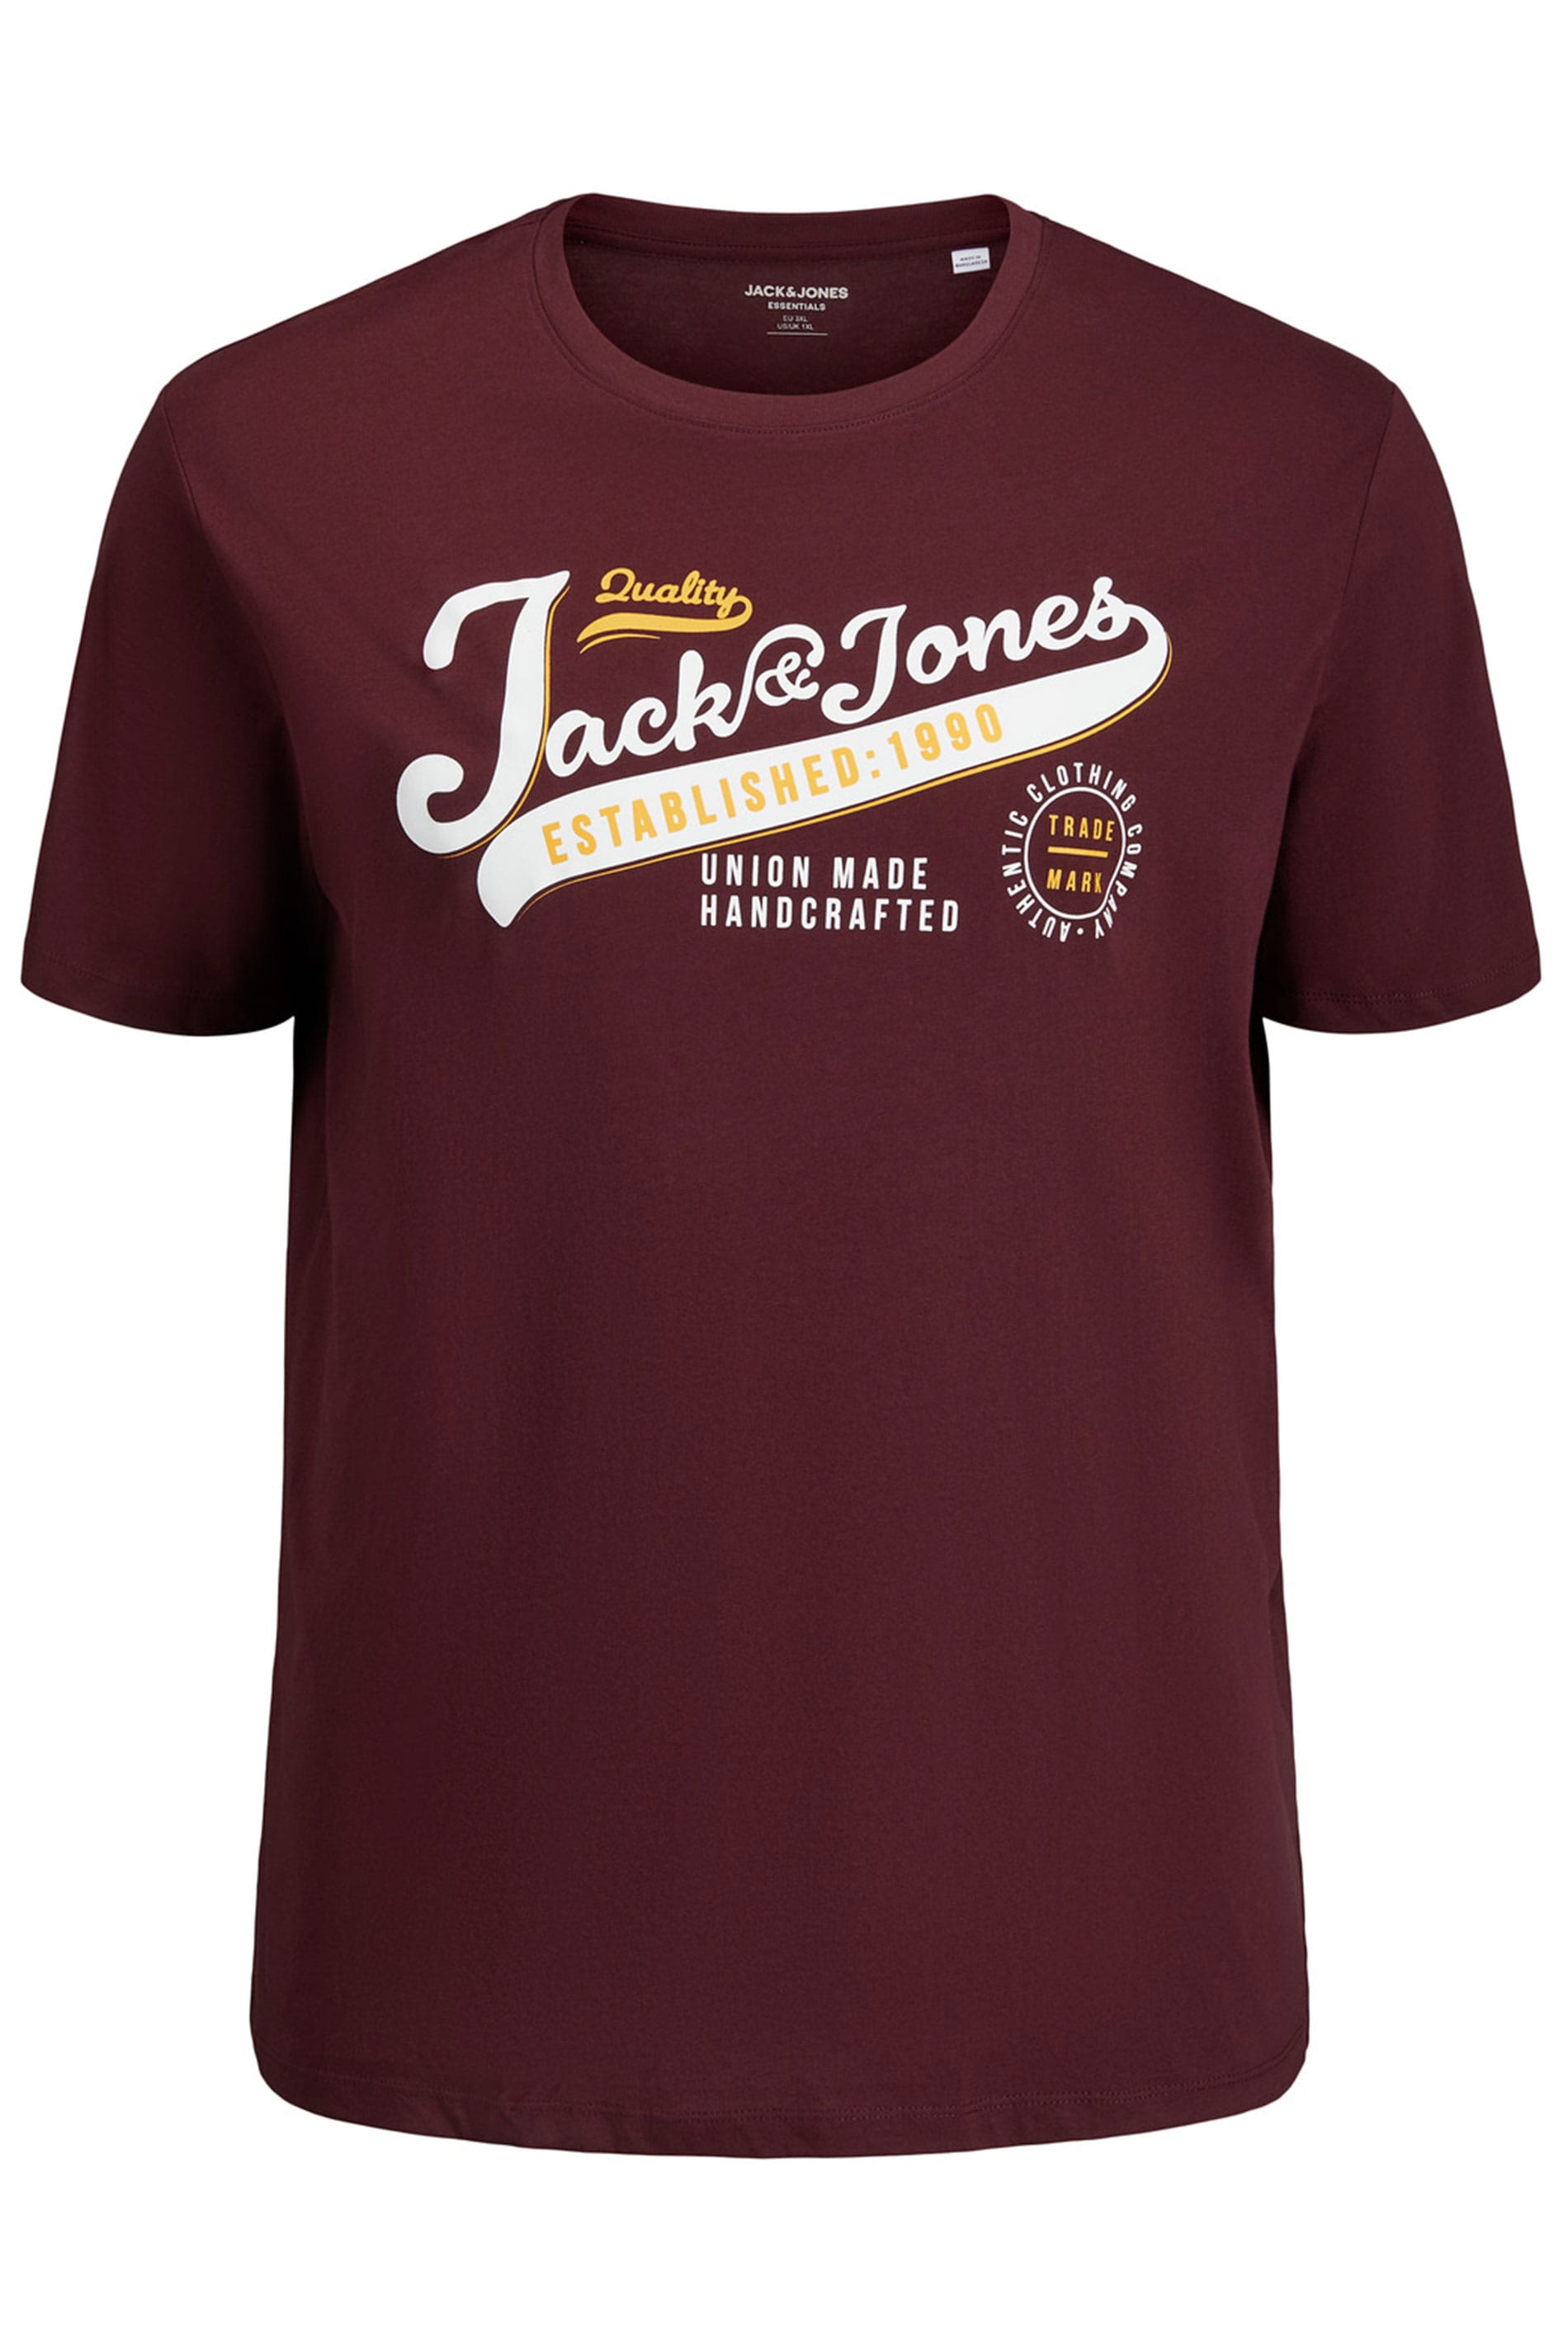 JACK & JONES Burgundy Logo Chest Print T-Shirt | BadRhino